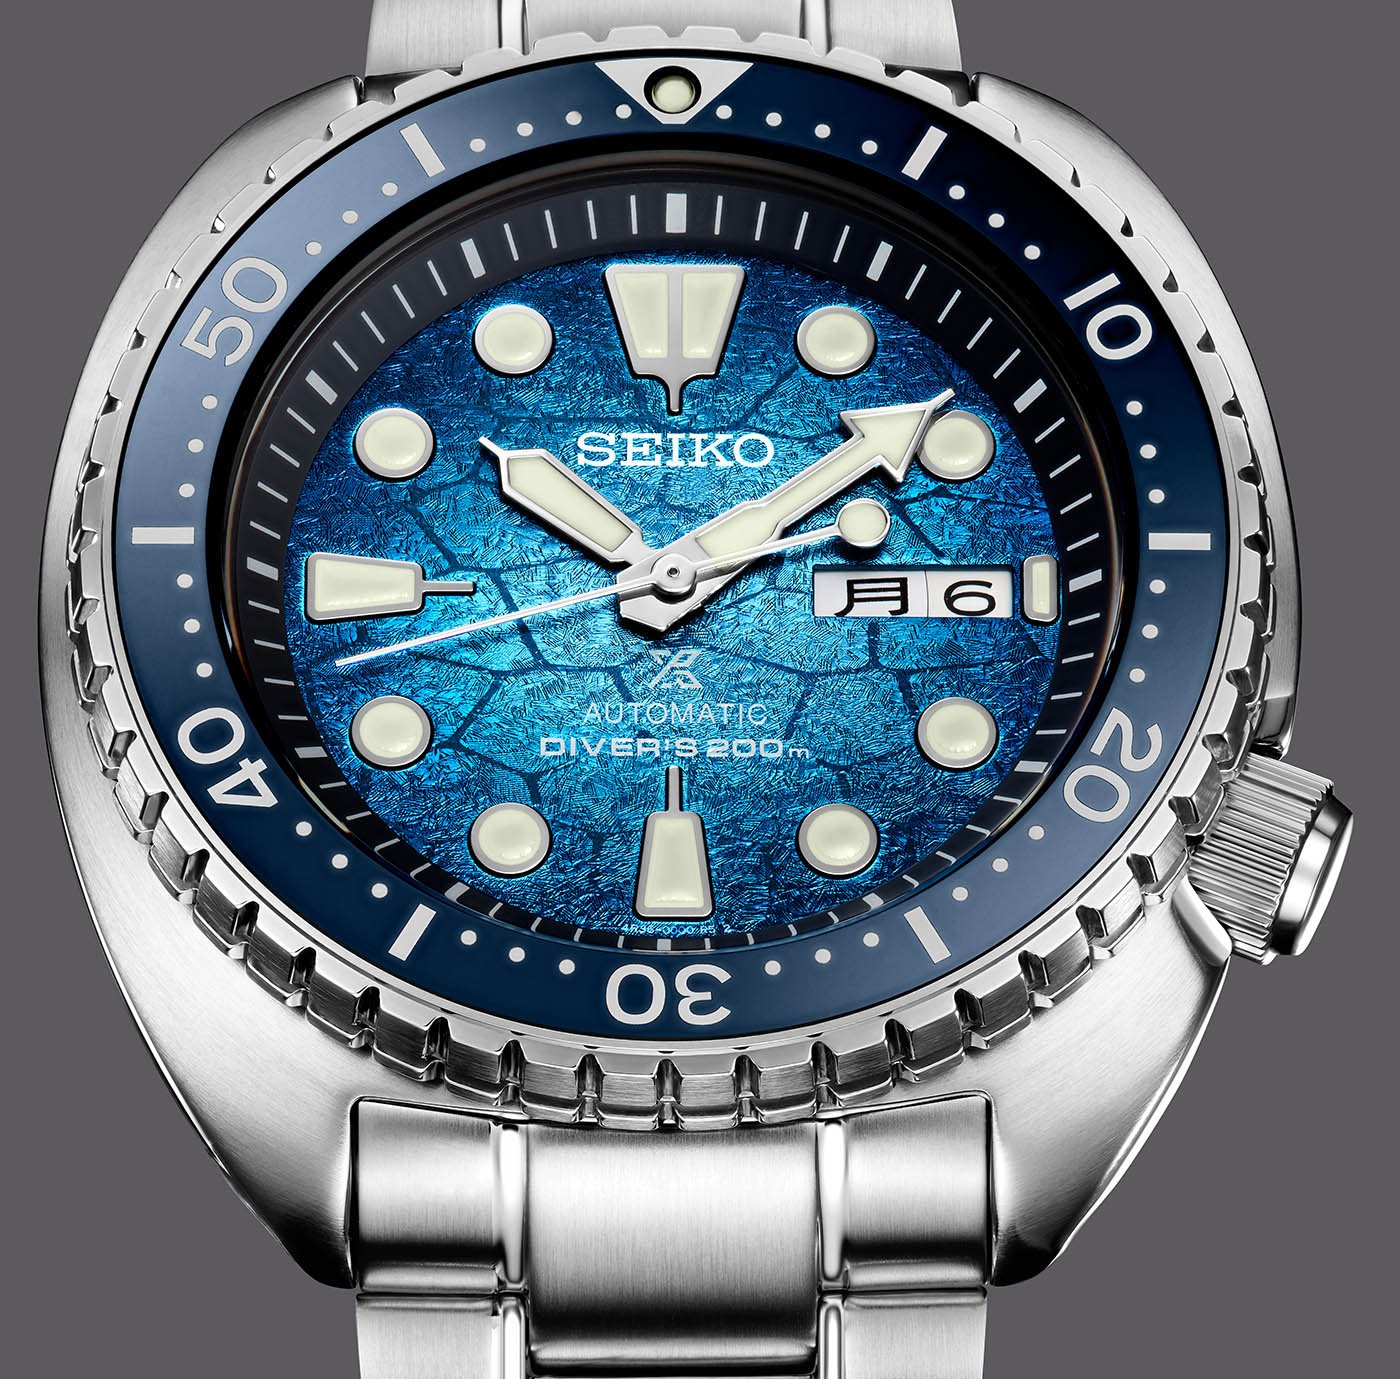 Seiko представила трио специальных серийных дайверских часов Prospex U.S., вдохновленных морскими черепахами